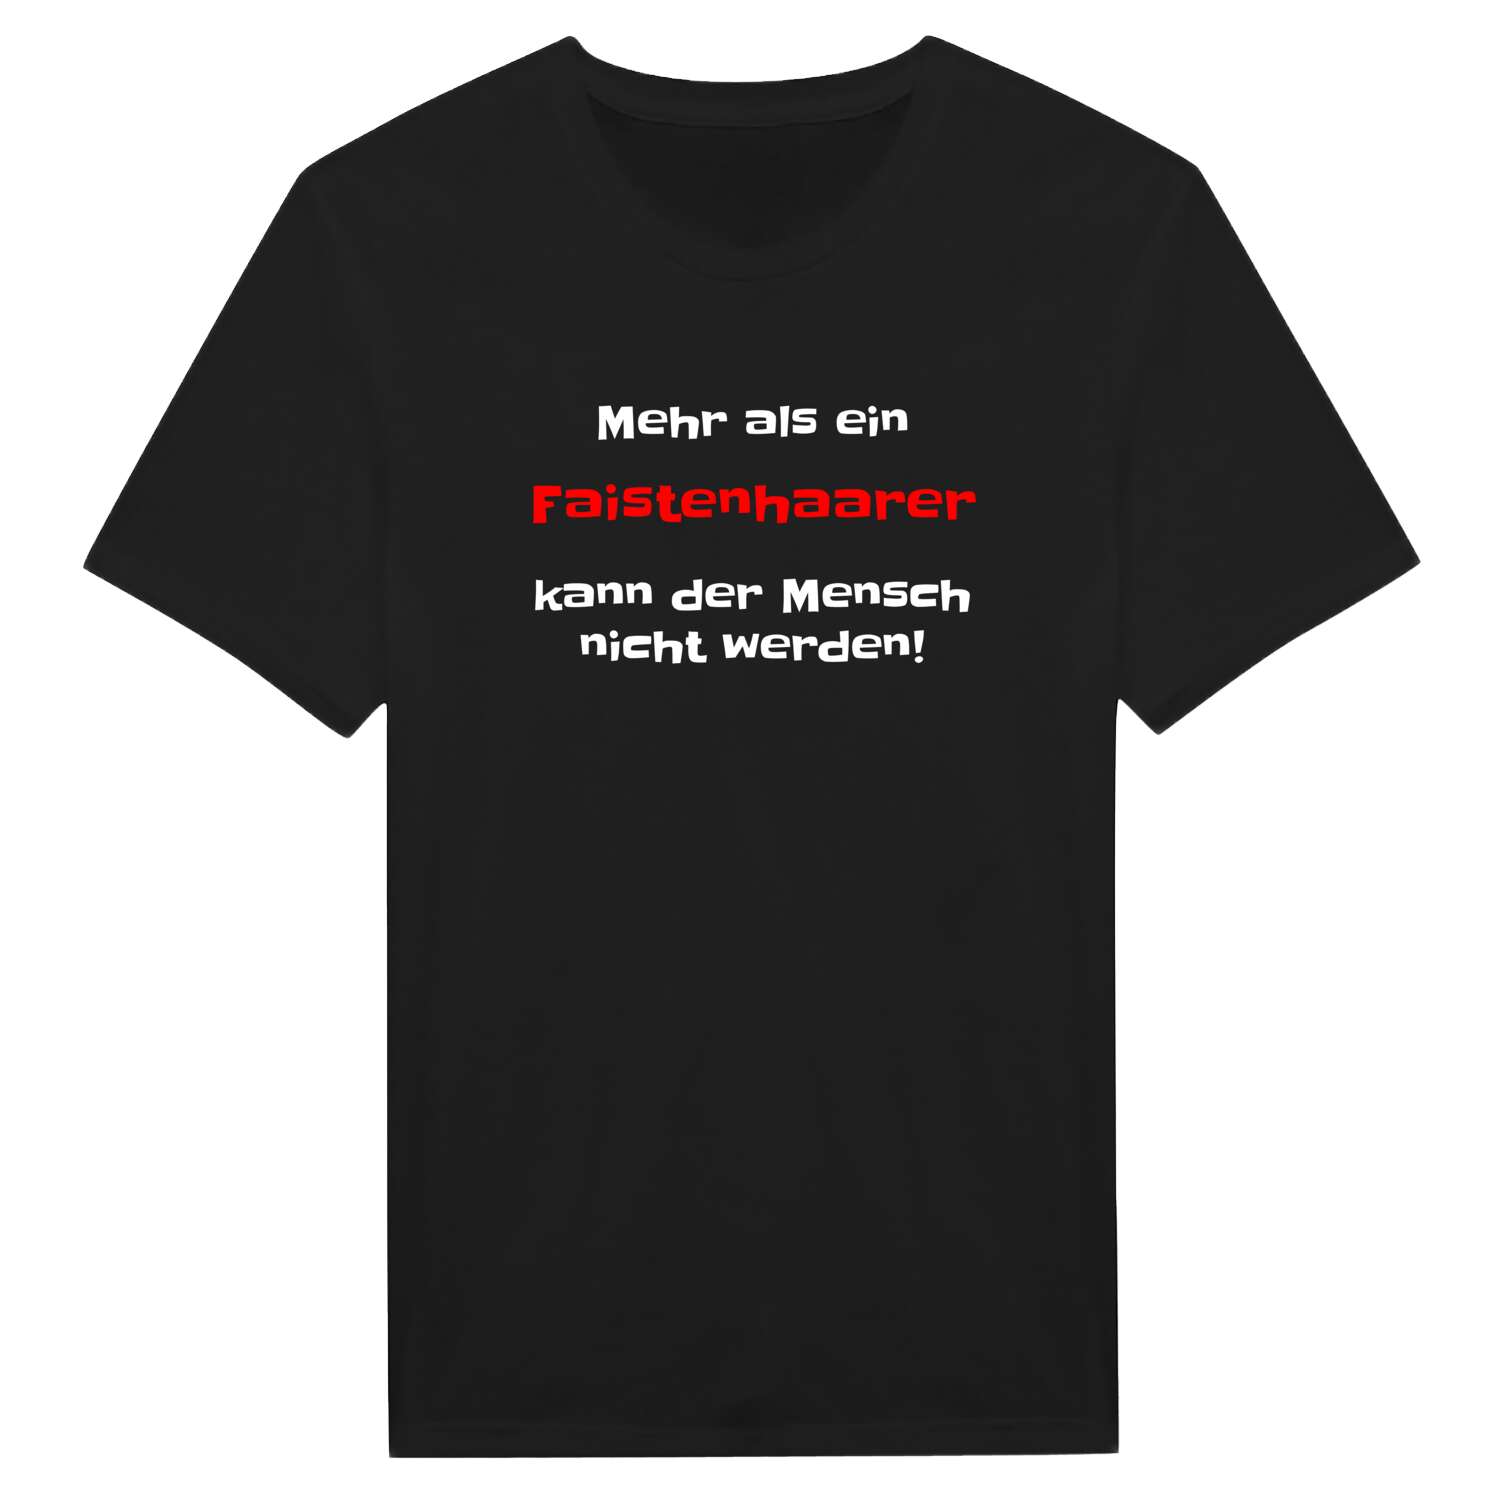 Faistenhaar T-Shirt »Mehr als ein«